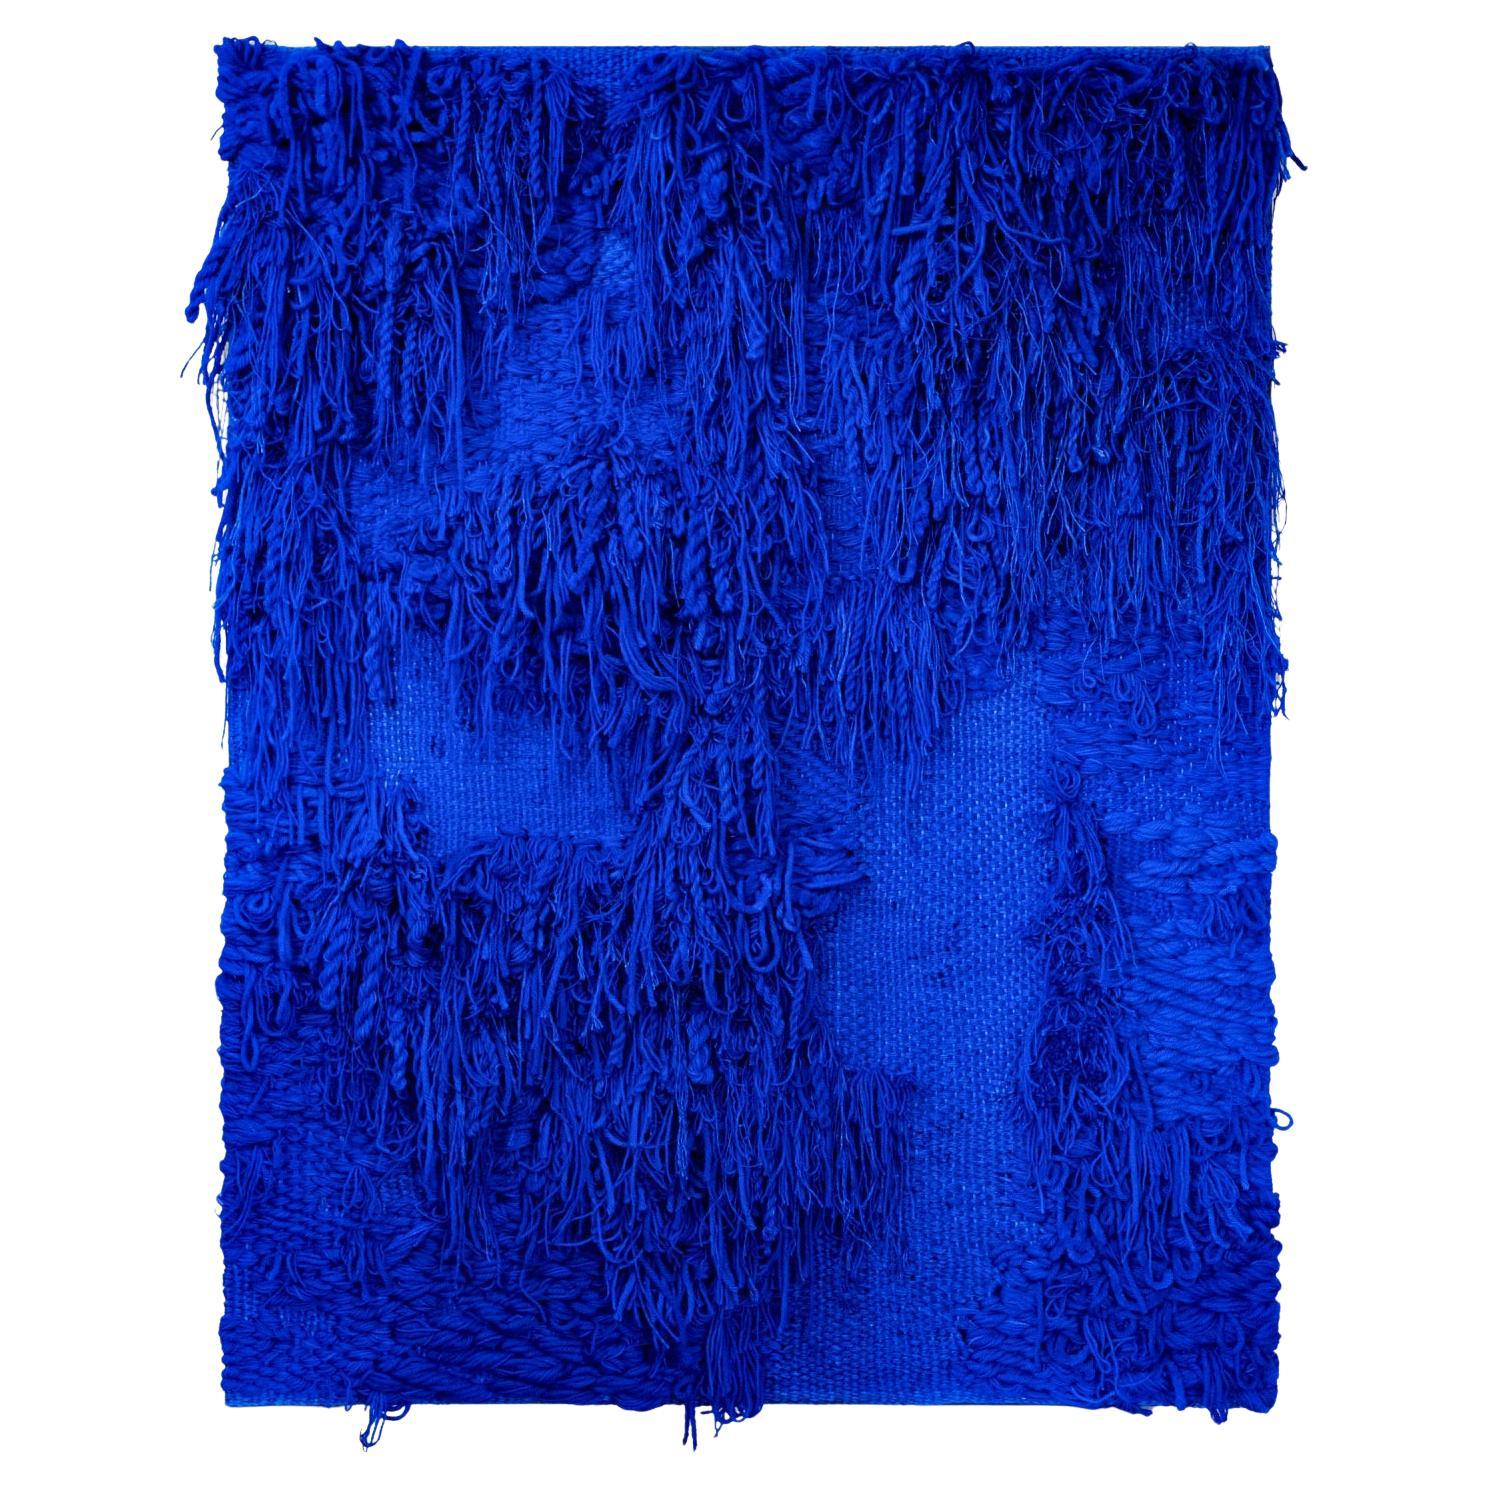 Tapisserie contemporaine bleue, teinte et tissée à la main par Katja Beckman